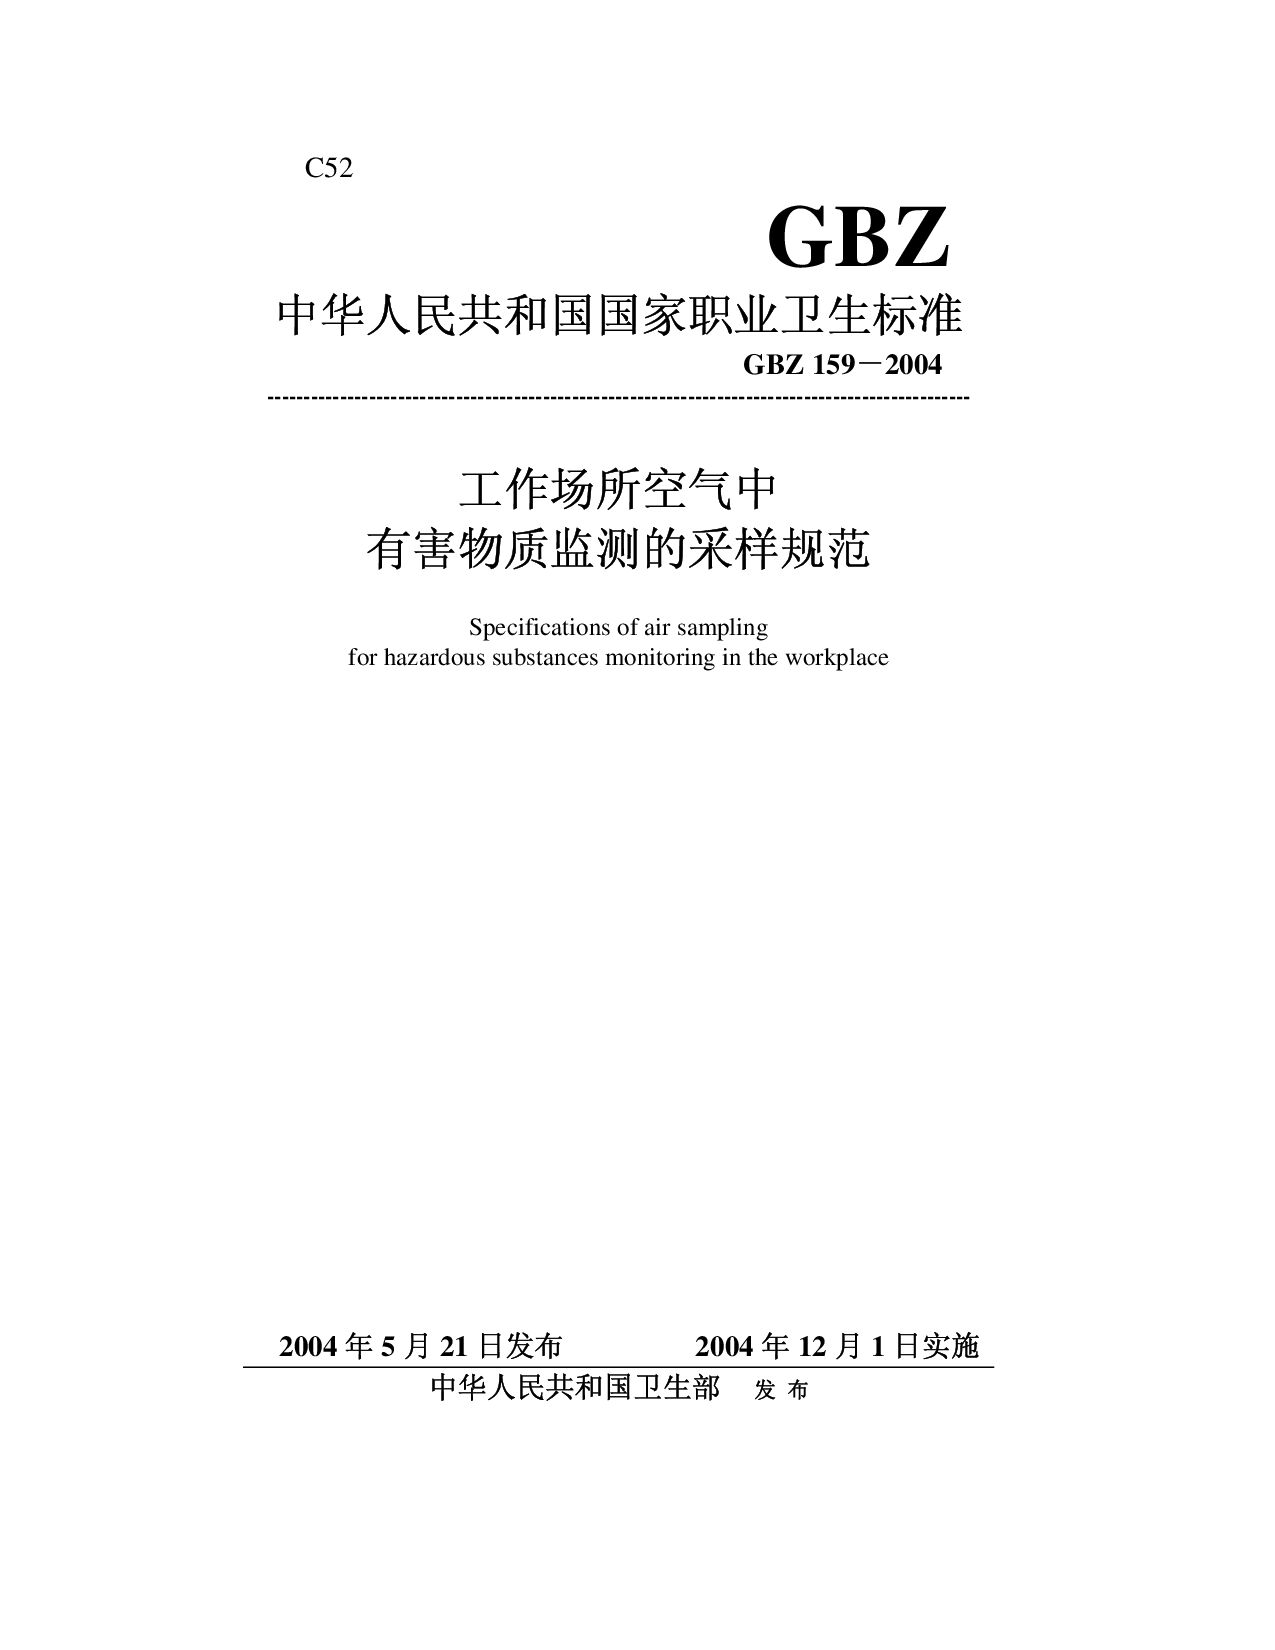 GBZ 159-2004